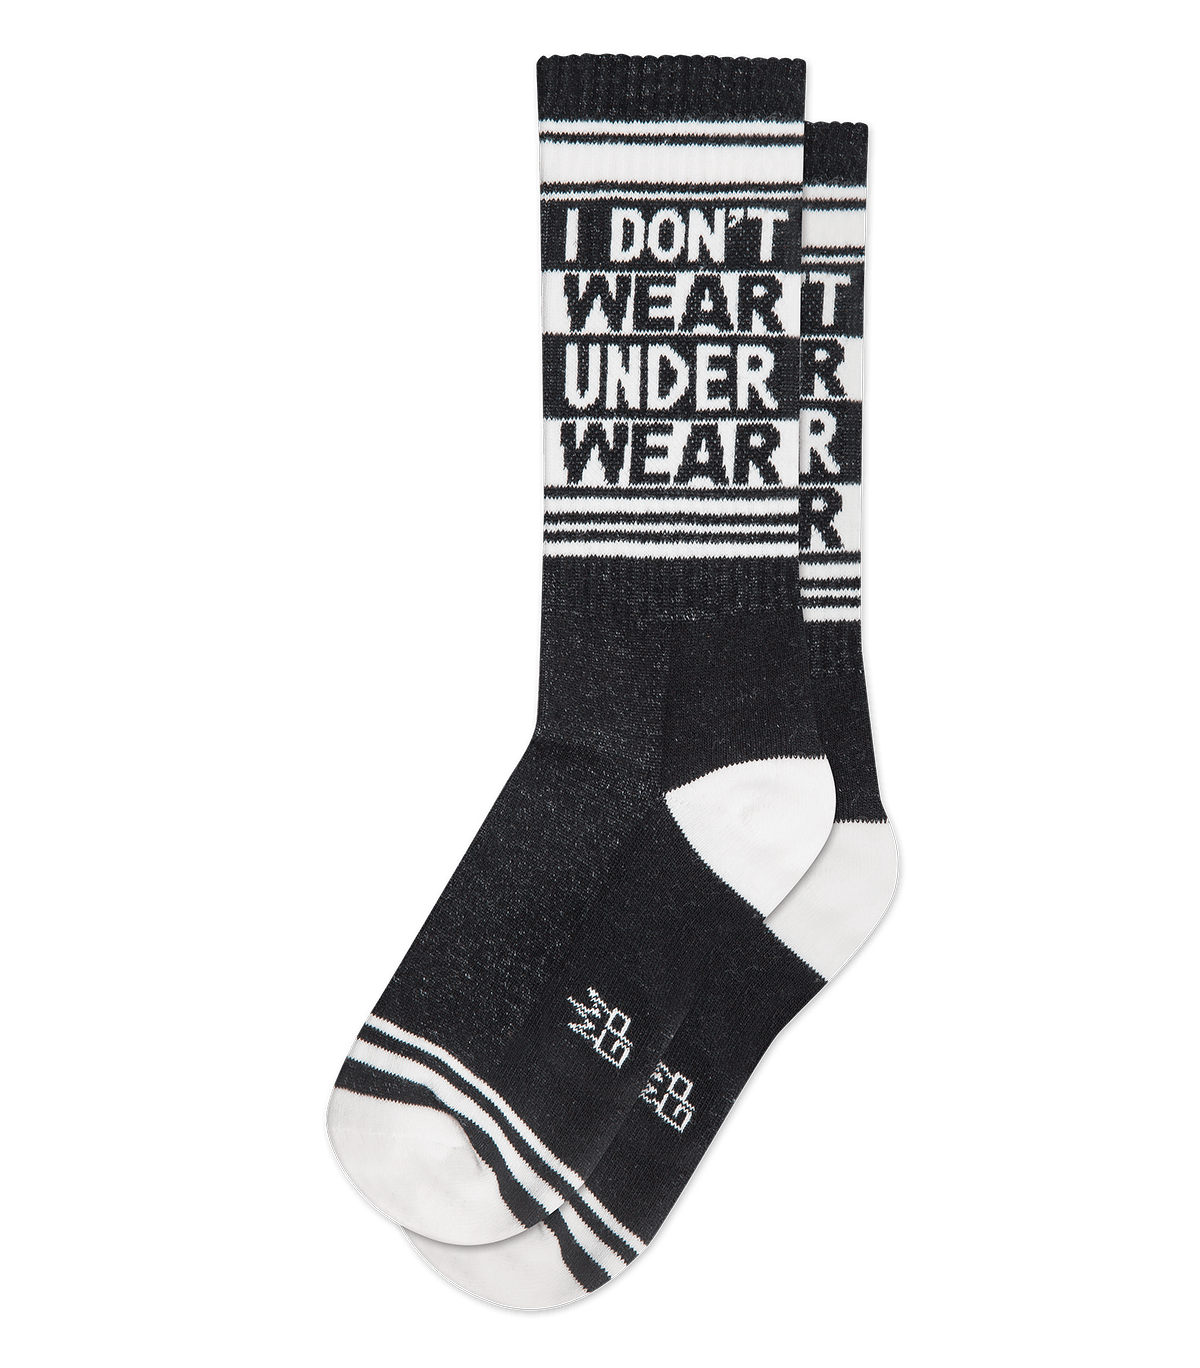 Black Socks & Underwear for Women